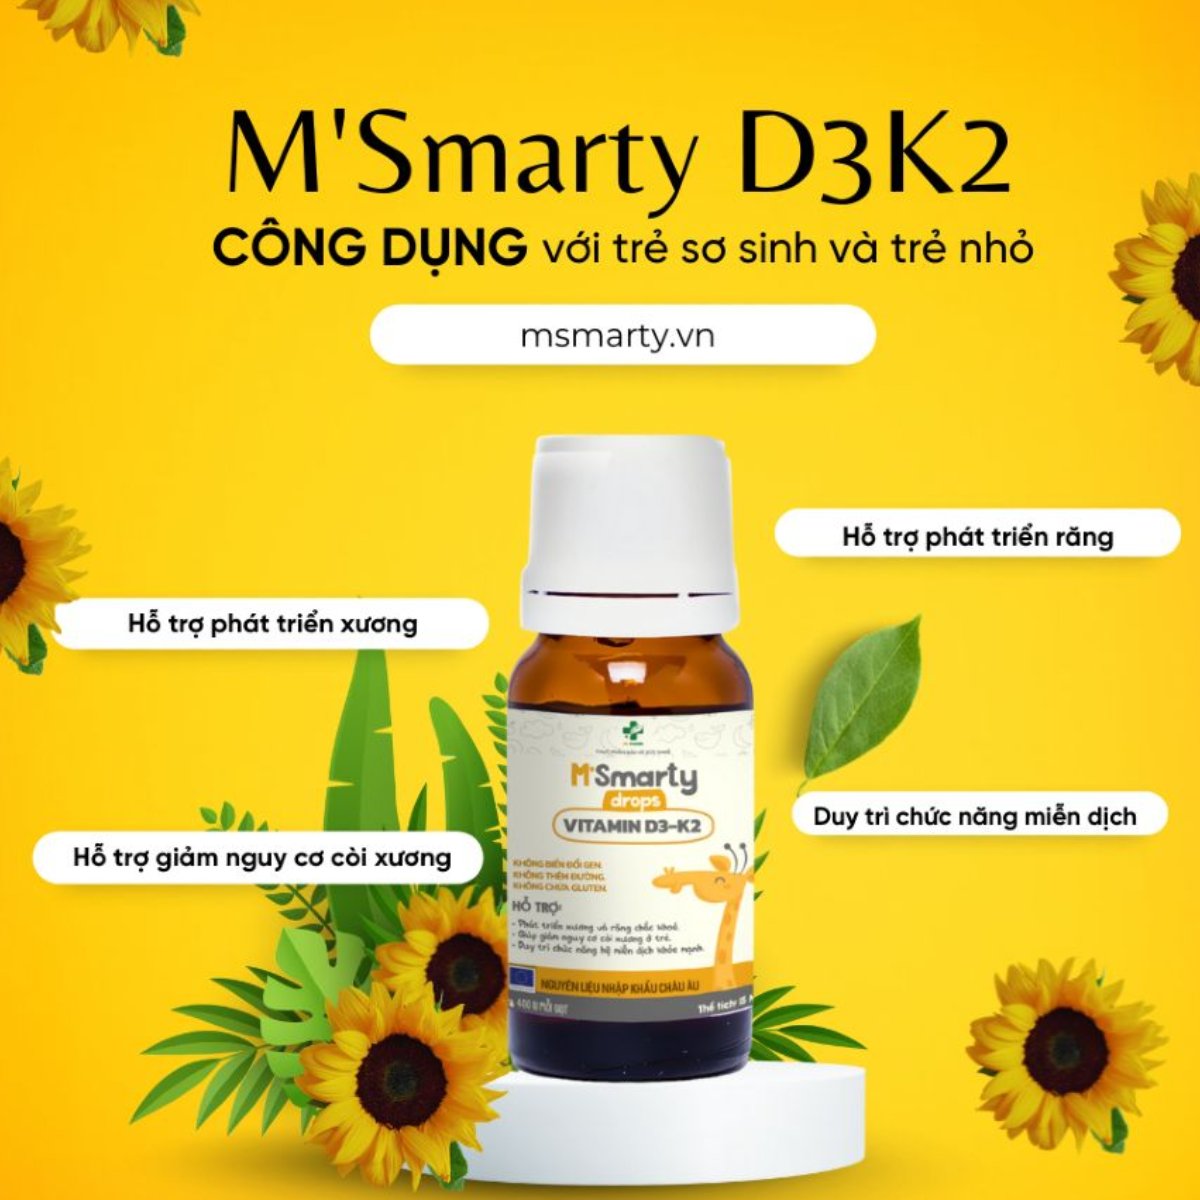 Những trường hợp nào mẹ nên cho con sử dụng M'Smarty Vitamin D3K2 Drops